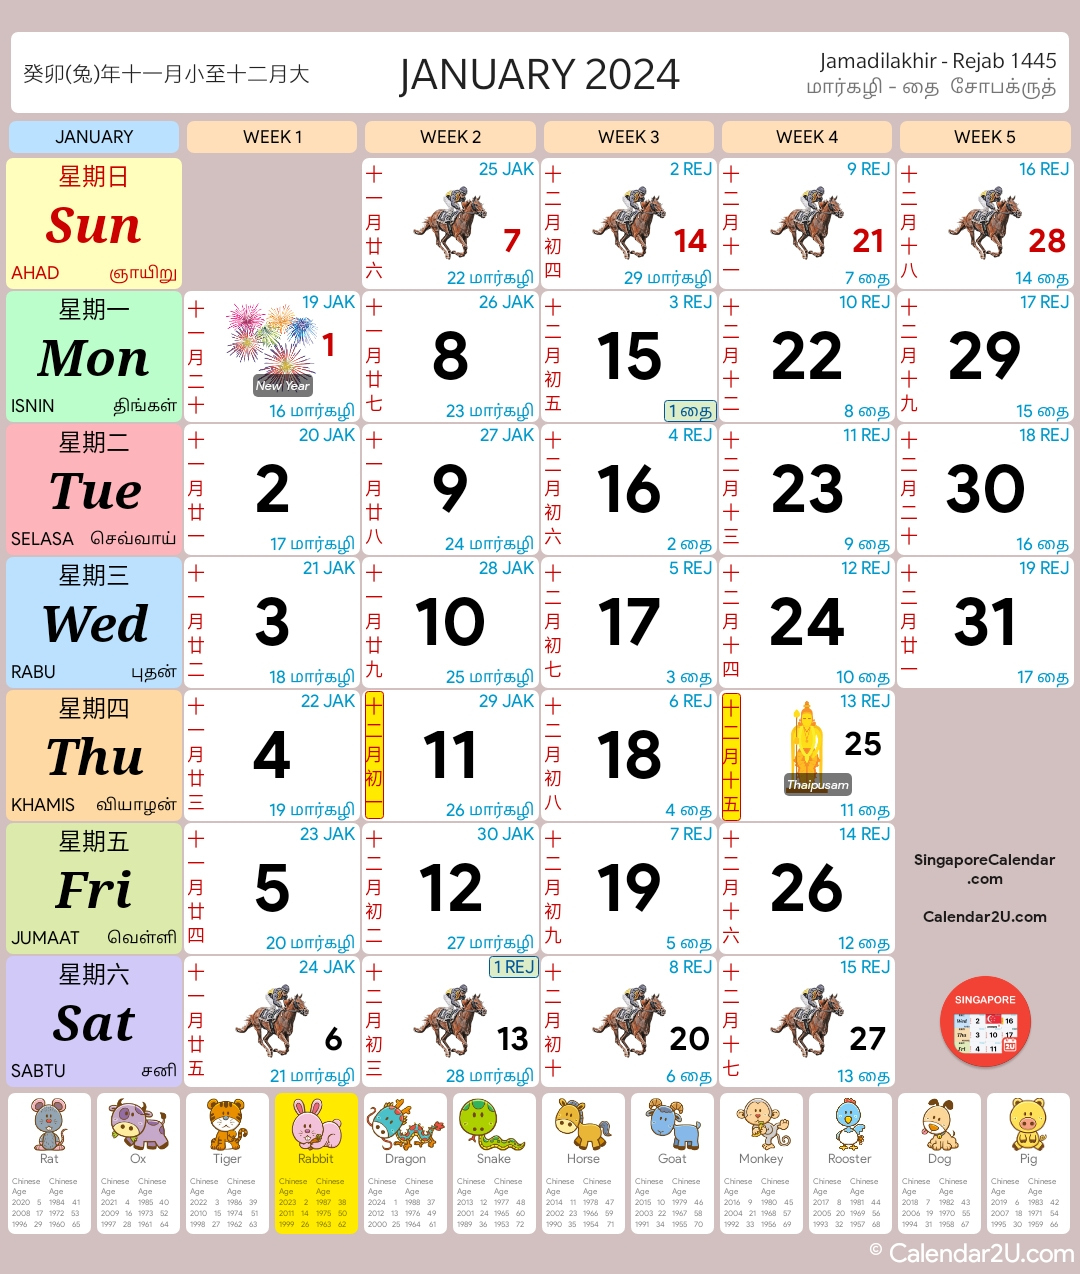 Singapore Calendar Year 2024 - Singapore Calendar | Printable Calendar 2024 Singapore Public Holiday